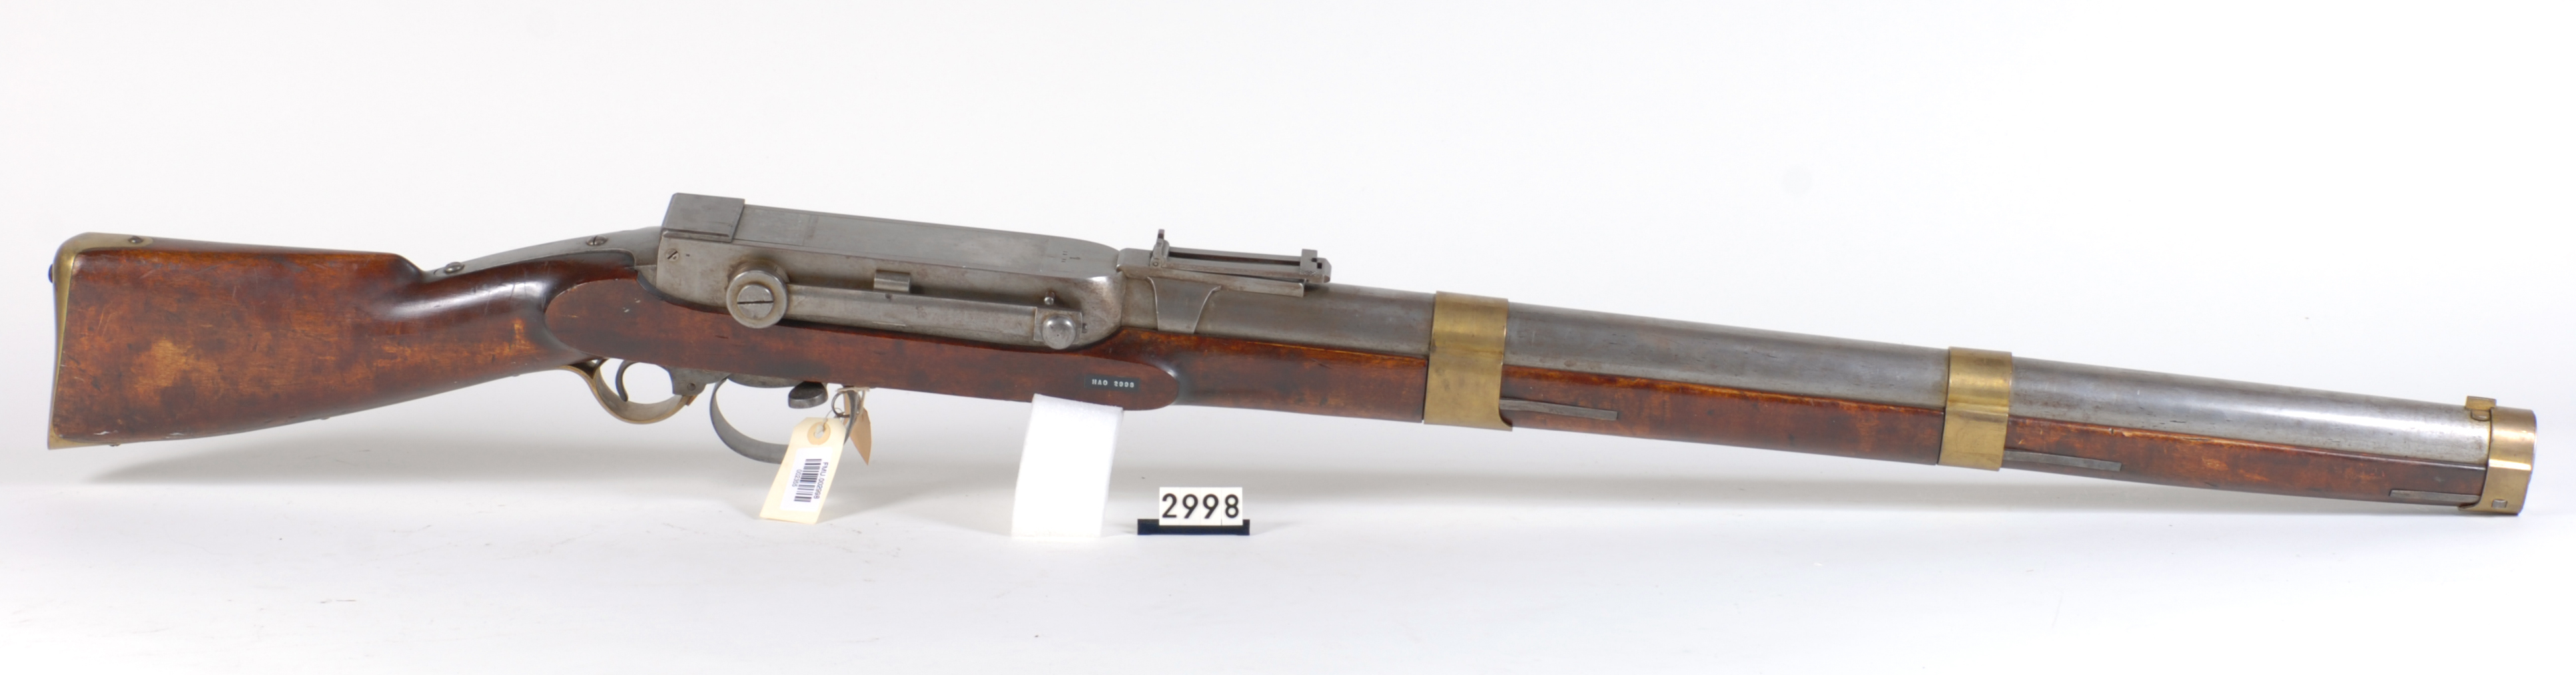 ./guns/rifle/bilder/Rifle-Kongsberg-Kammerlader-Vollgrav-1864-1.jpg